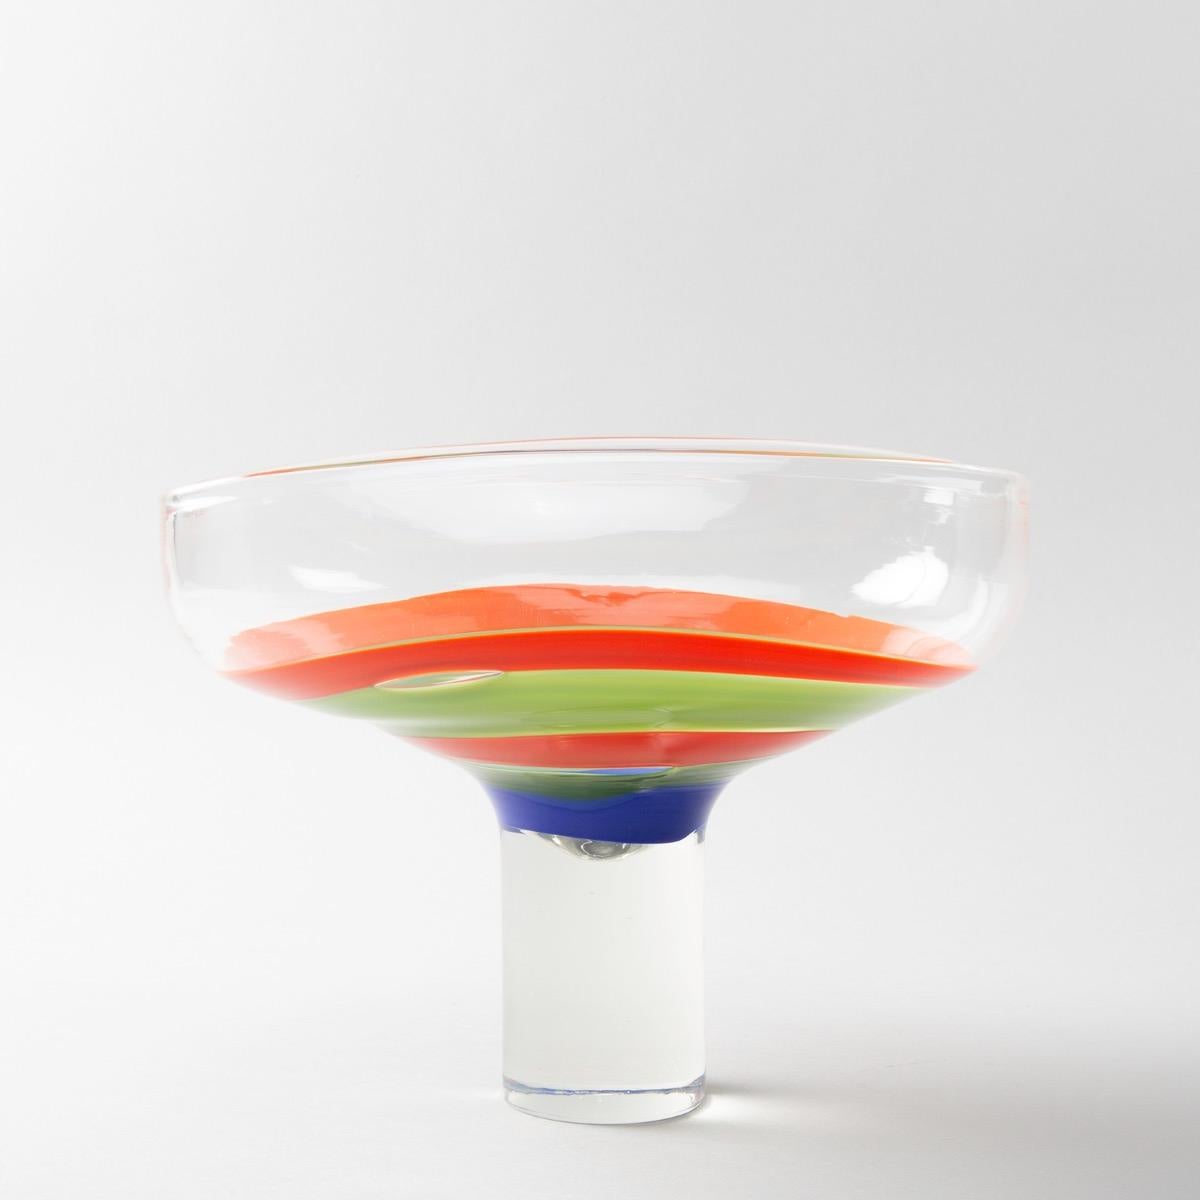 Une grande tasse rare conçue pour Philips, vers 1968-1970 par Ludovico Diaz de Santillana.
Une coupe rectangulaire sur un pied cylindrique haut.
Le centre est décoré de bandes concentriques de verre orange, bleu et vert.
Ce modèle commandé par la